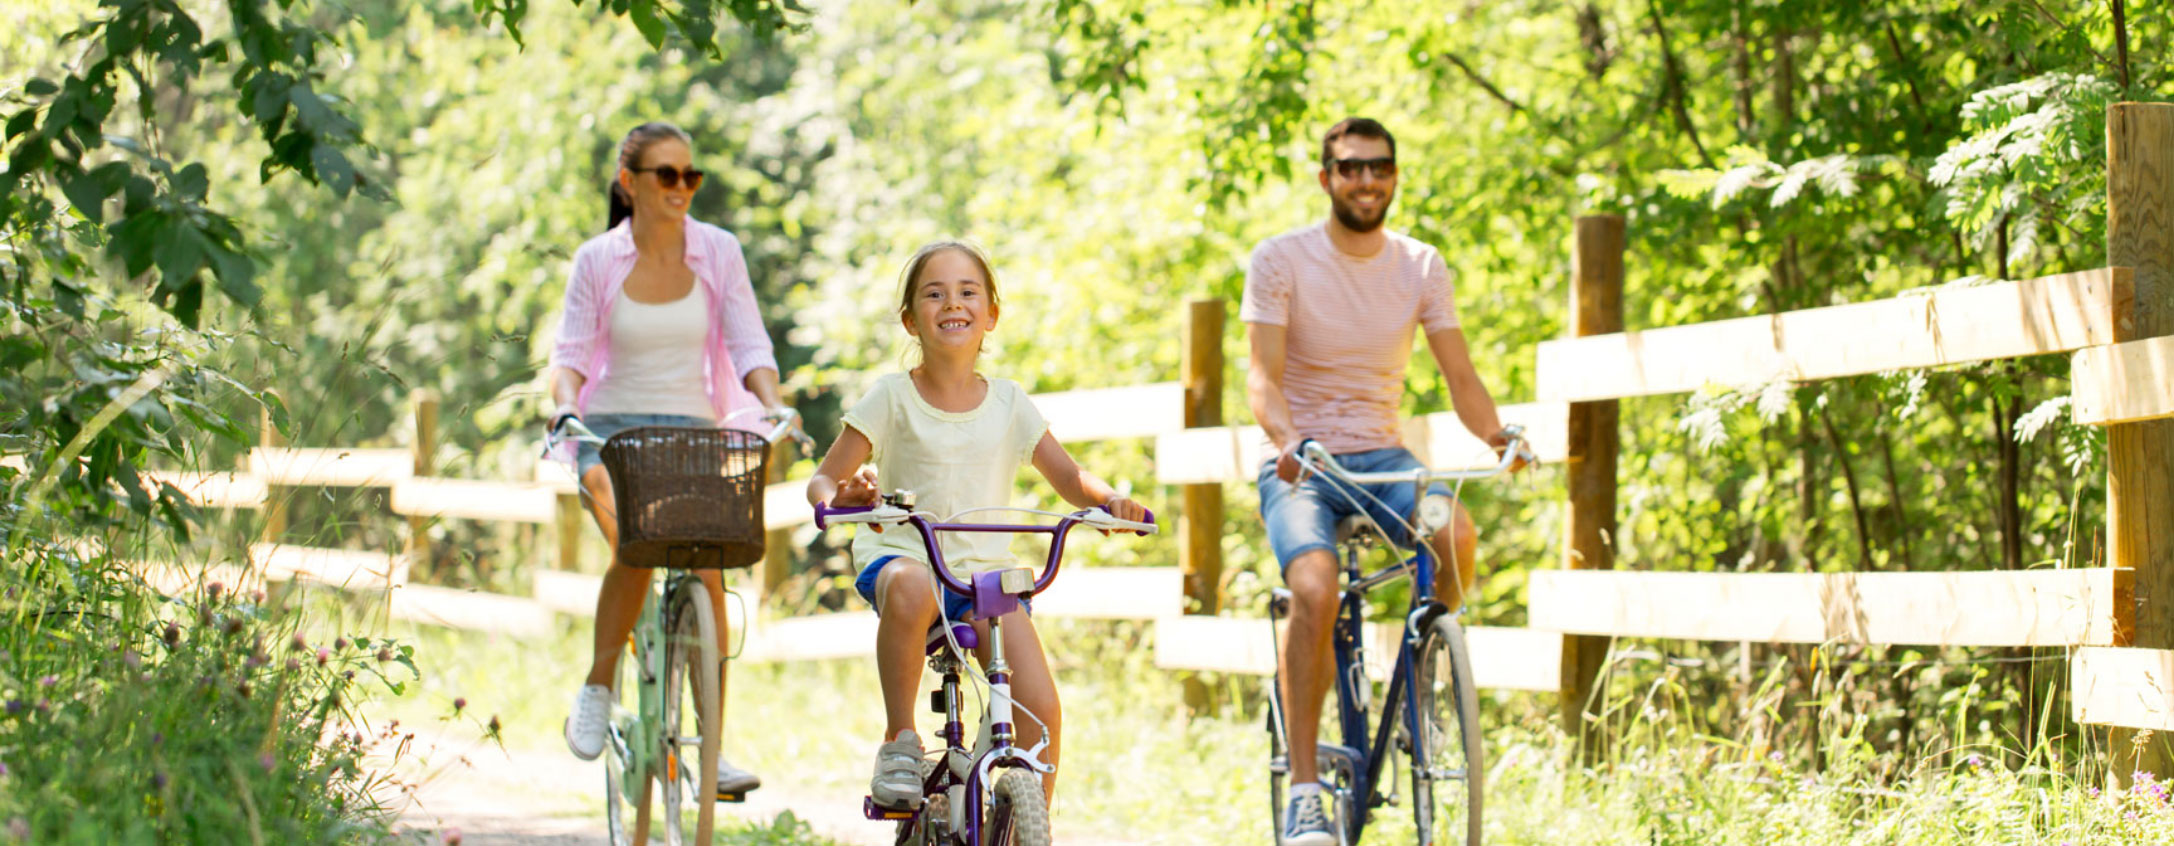 happy-family-riding-bikes-outdoors